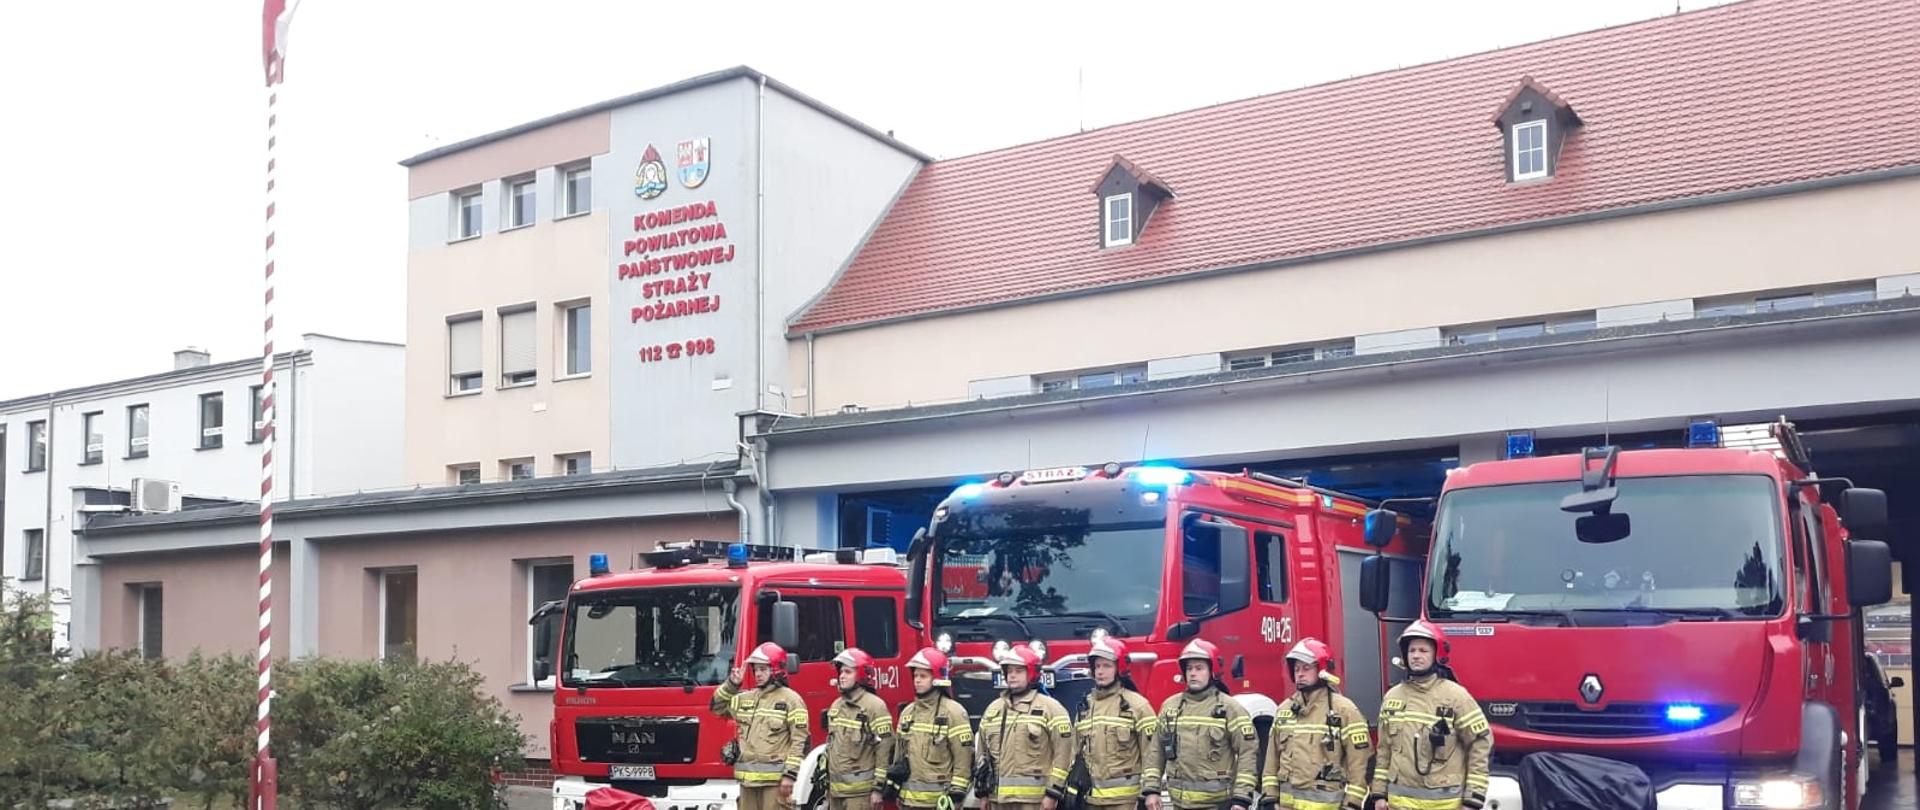 ODDALI HOŁD ZMARŁYM STRAŻAKOM. Na zdjęciu widać strażaków przed budynkiem Komendy, samochody strażackie wyjechały z garażu, mają włączone sygnały świetlne i dźwiękowe, widać maszt z flagą Polski i budynek Komendy Powiatowej PSP w Kościanie